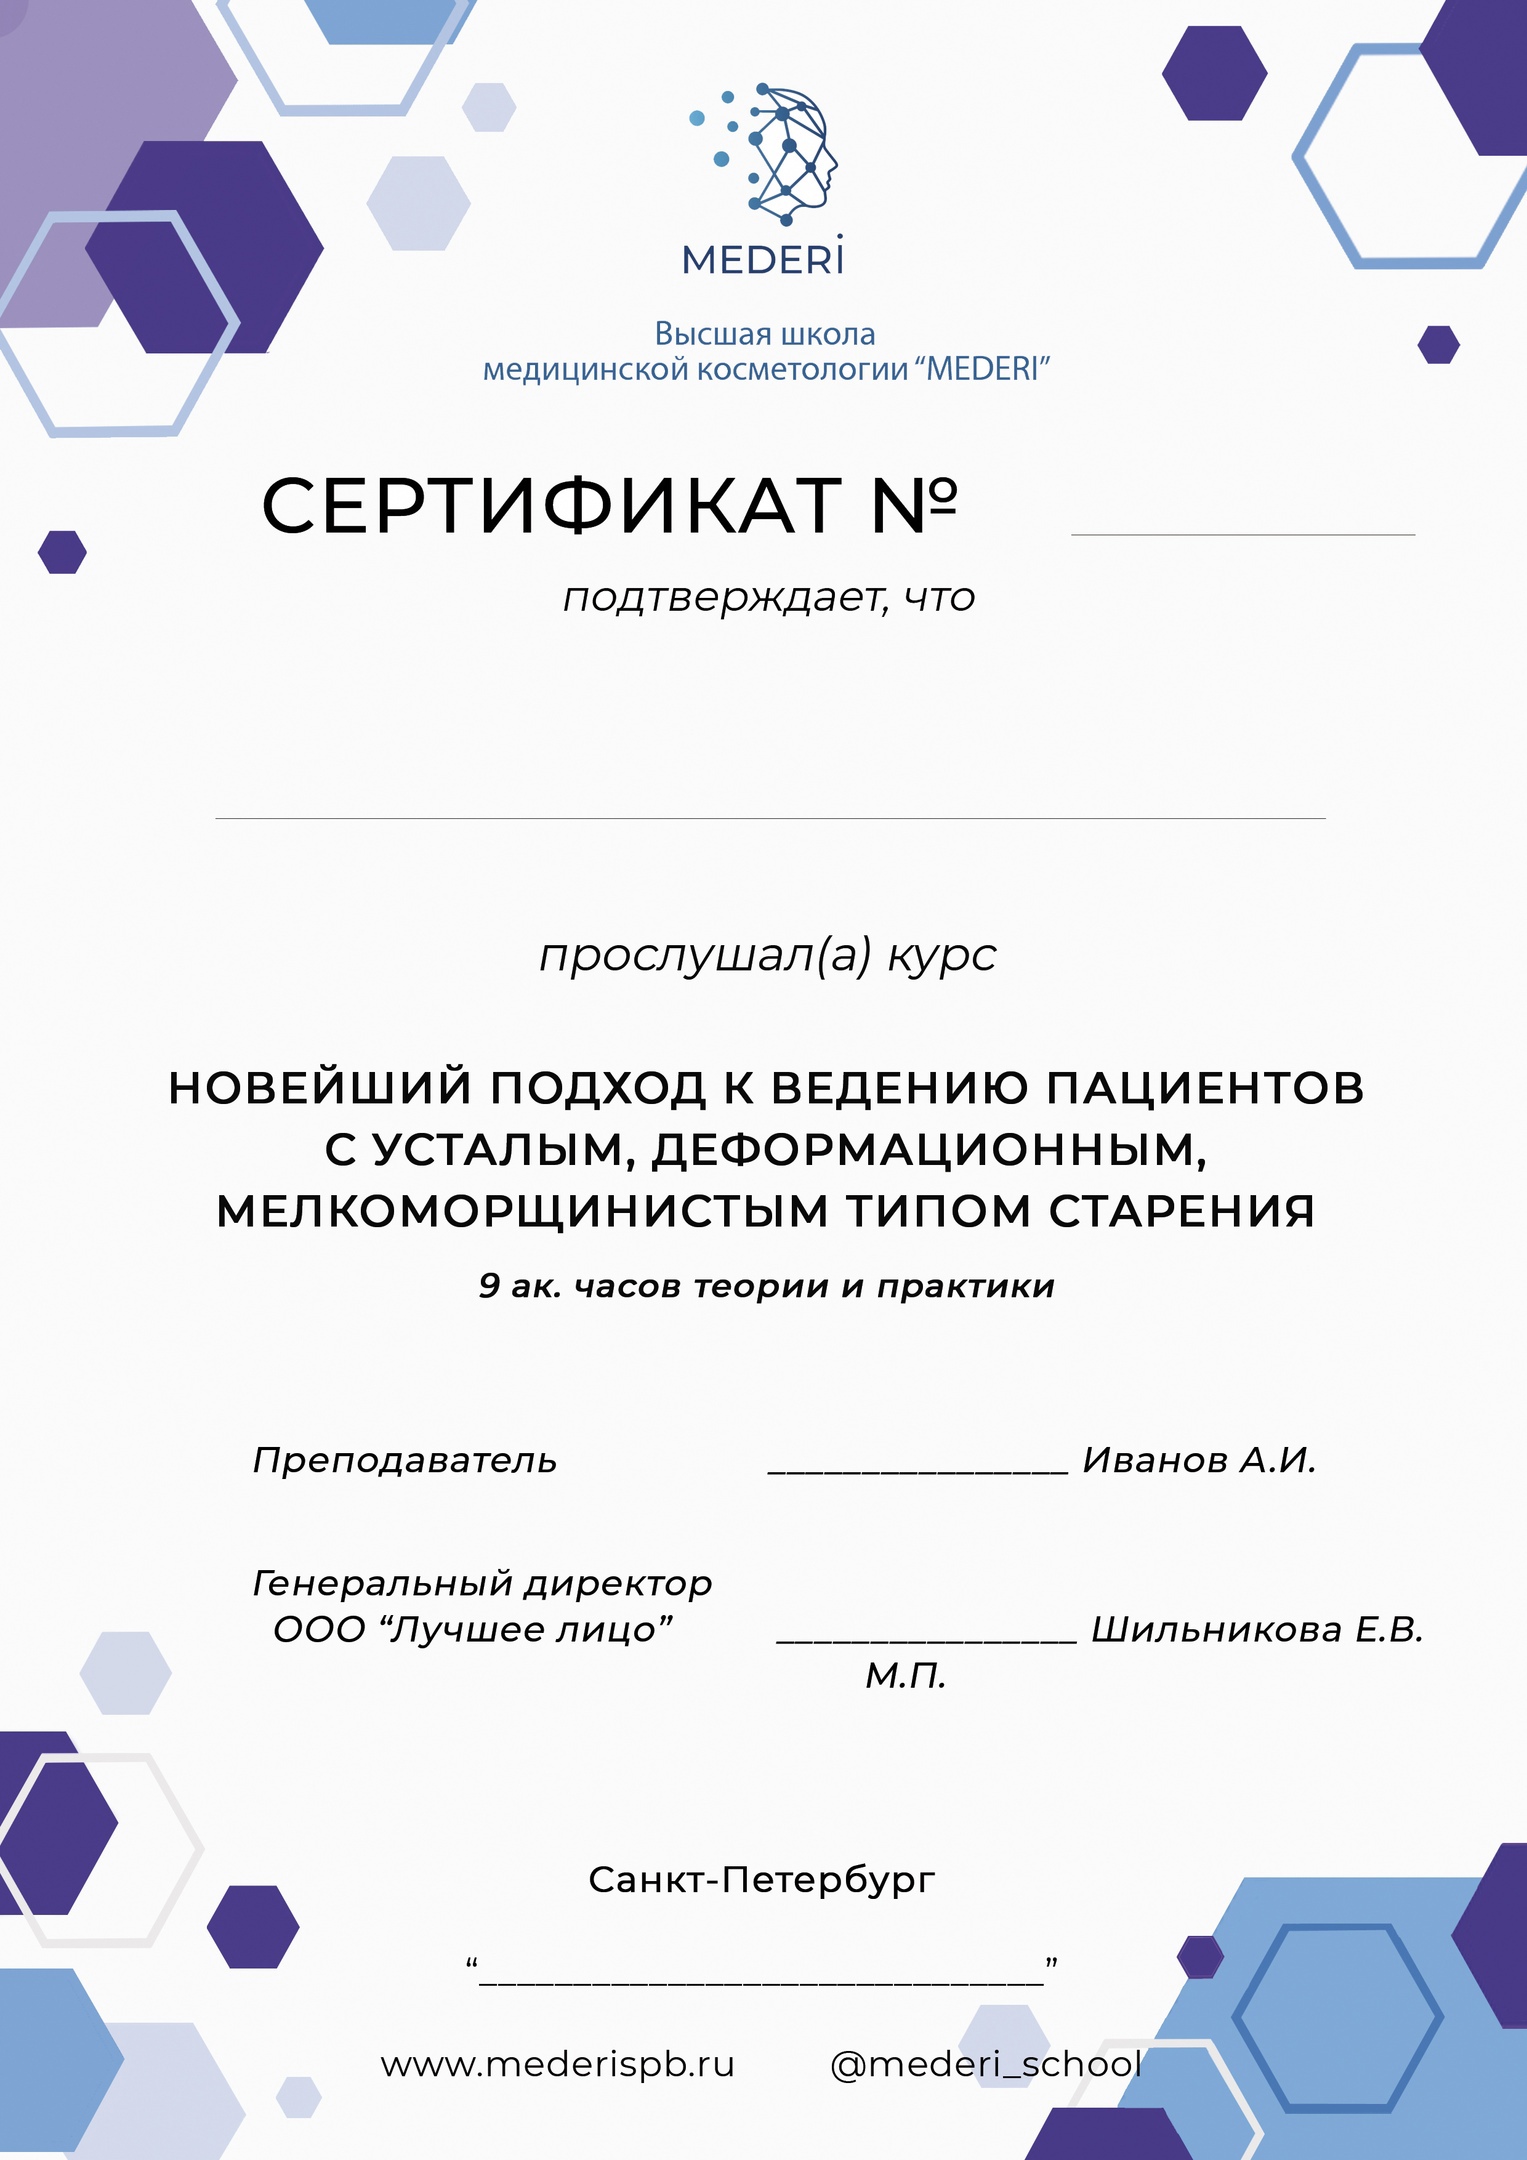 Сертификат: курс по морфотипам старения